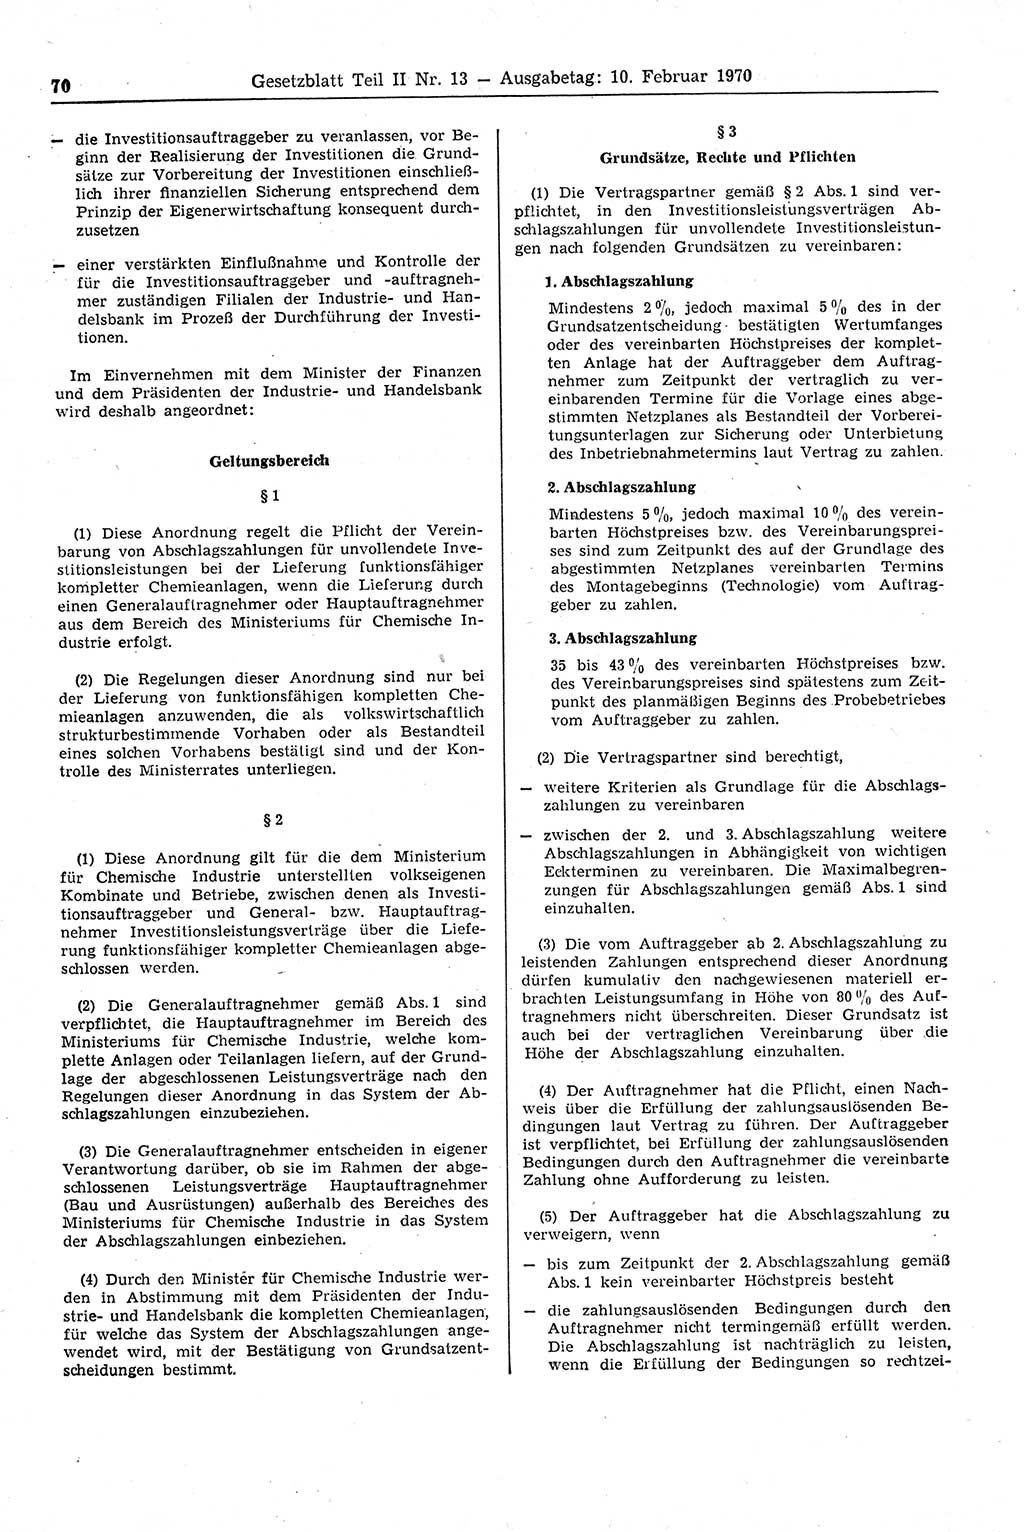 Gesetzblatt (GBl.) der Deutschen Demokratischen Republik (DDR) Teil ⅠⅠ 1970, Seite 70 (GBl. DDR ⅠⅠ 1970, S. 70)